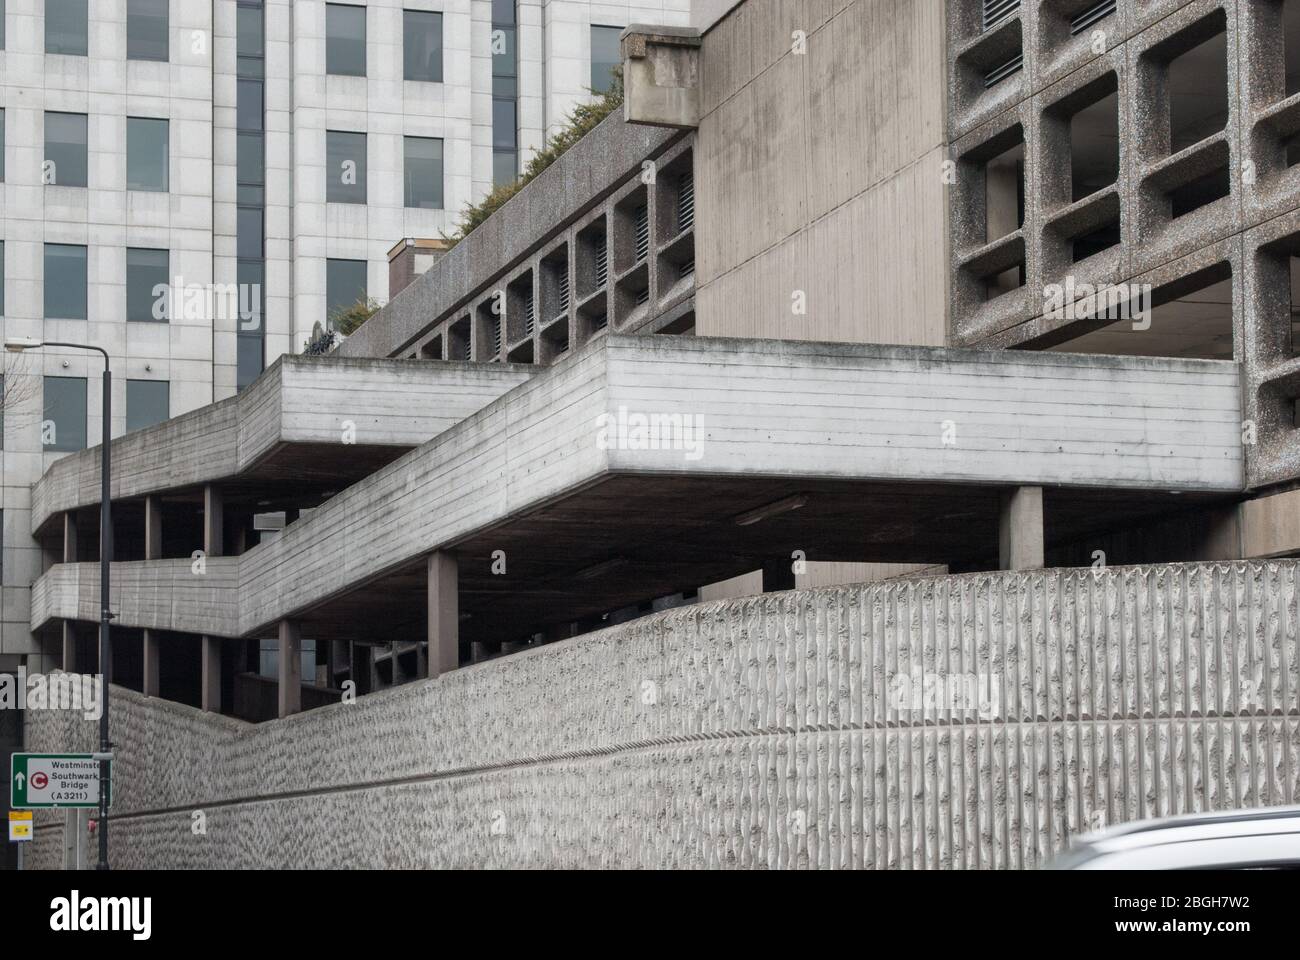 Années 1960 Architecture Brutaliste béton armé Brutalisme Minories car Park 1 Shorter Street, Tower, Londres E1 8LP Banque D'Images